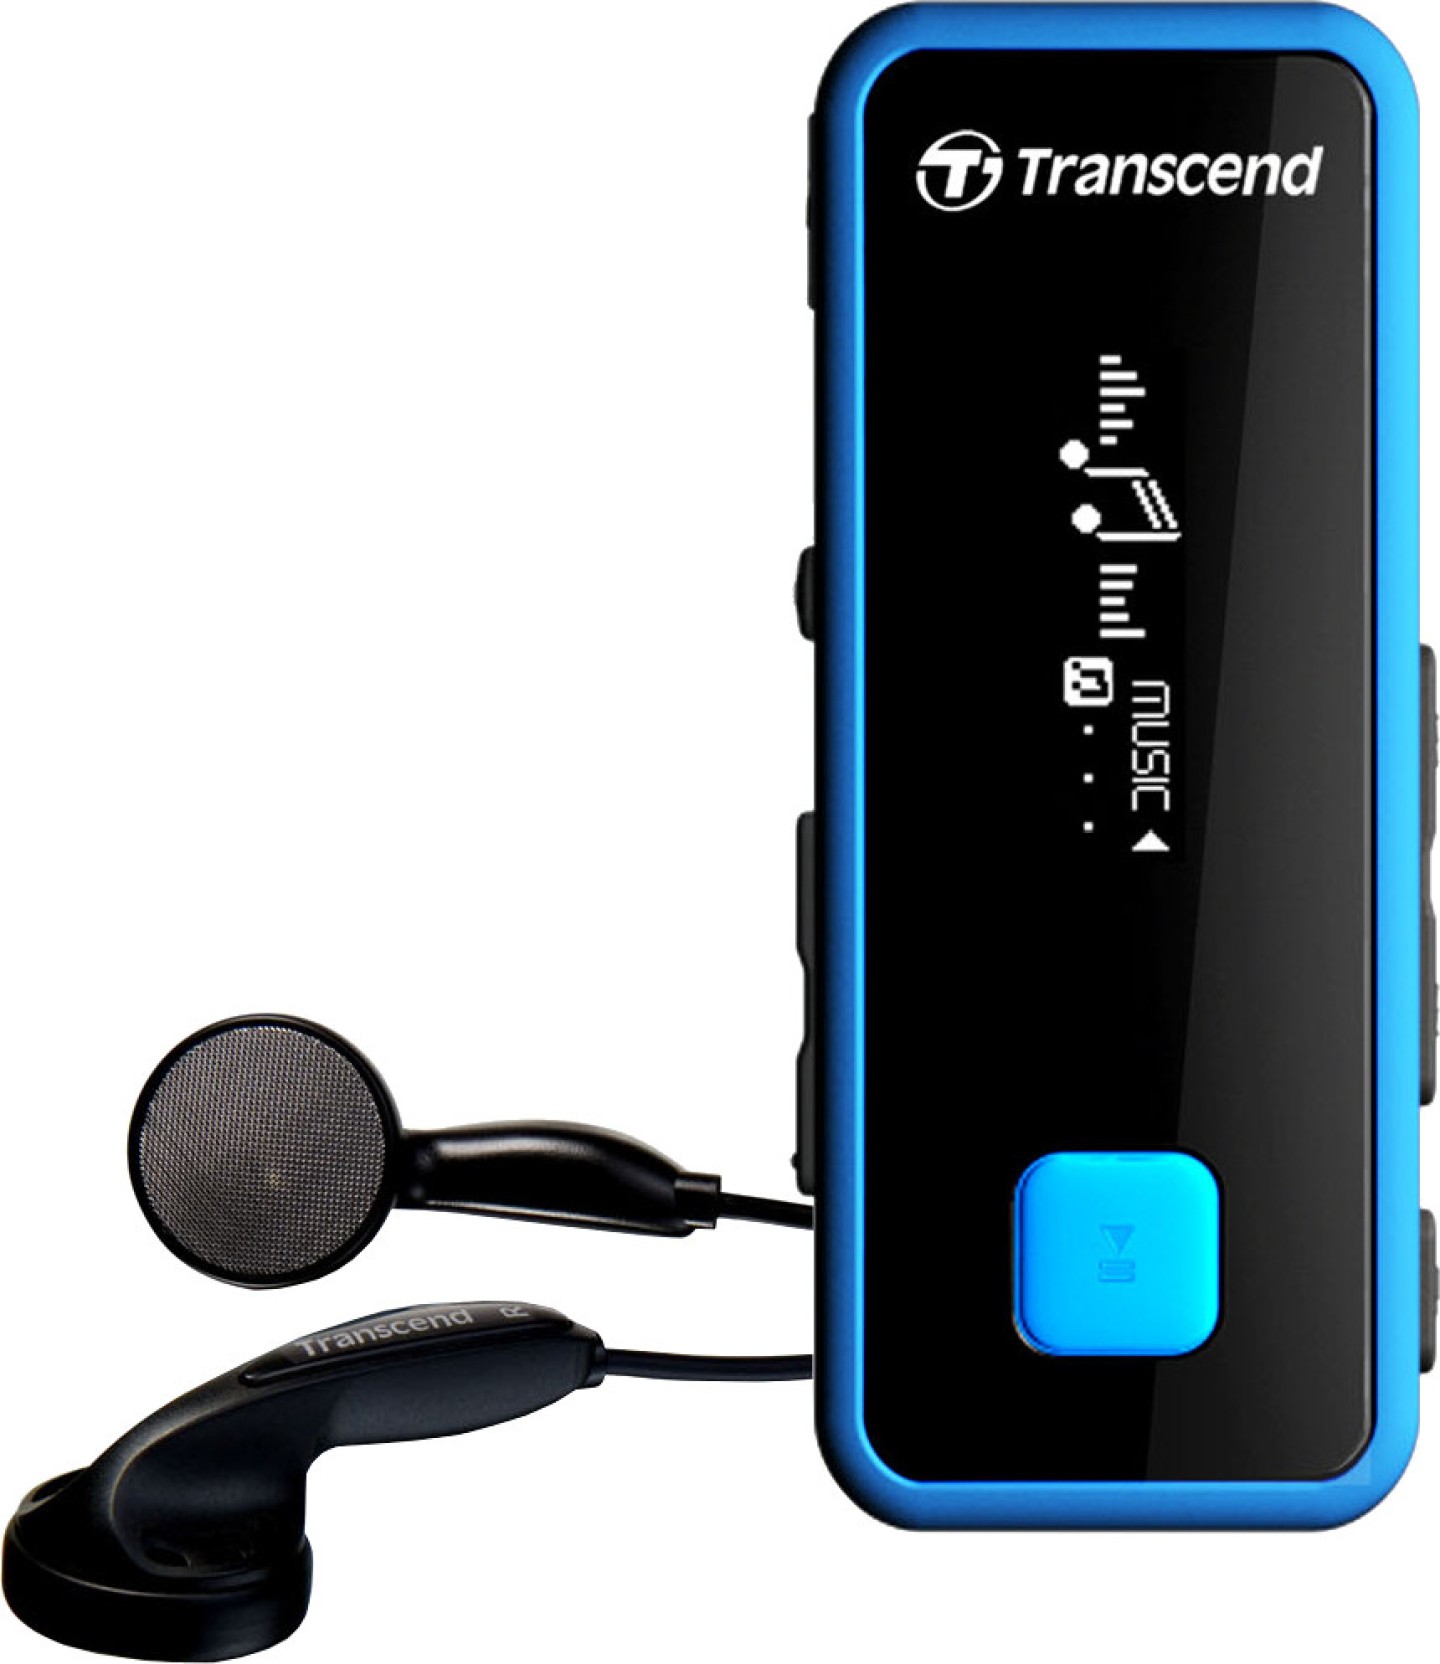 Transcend MP350 8 GB MP3 Player - Transcend : Flipkart.com